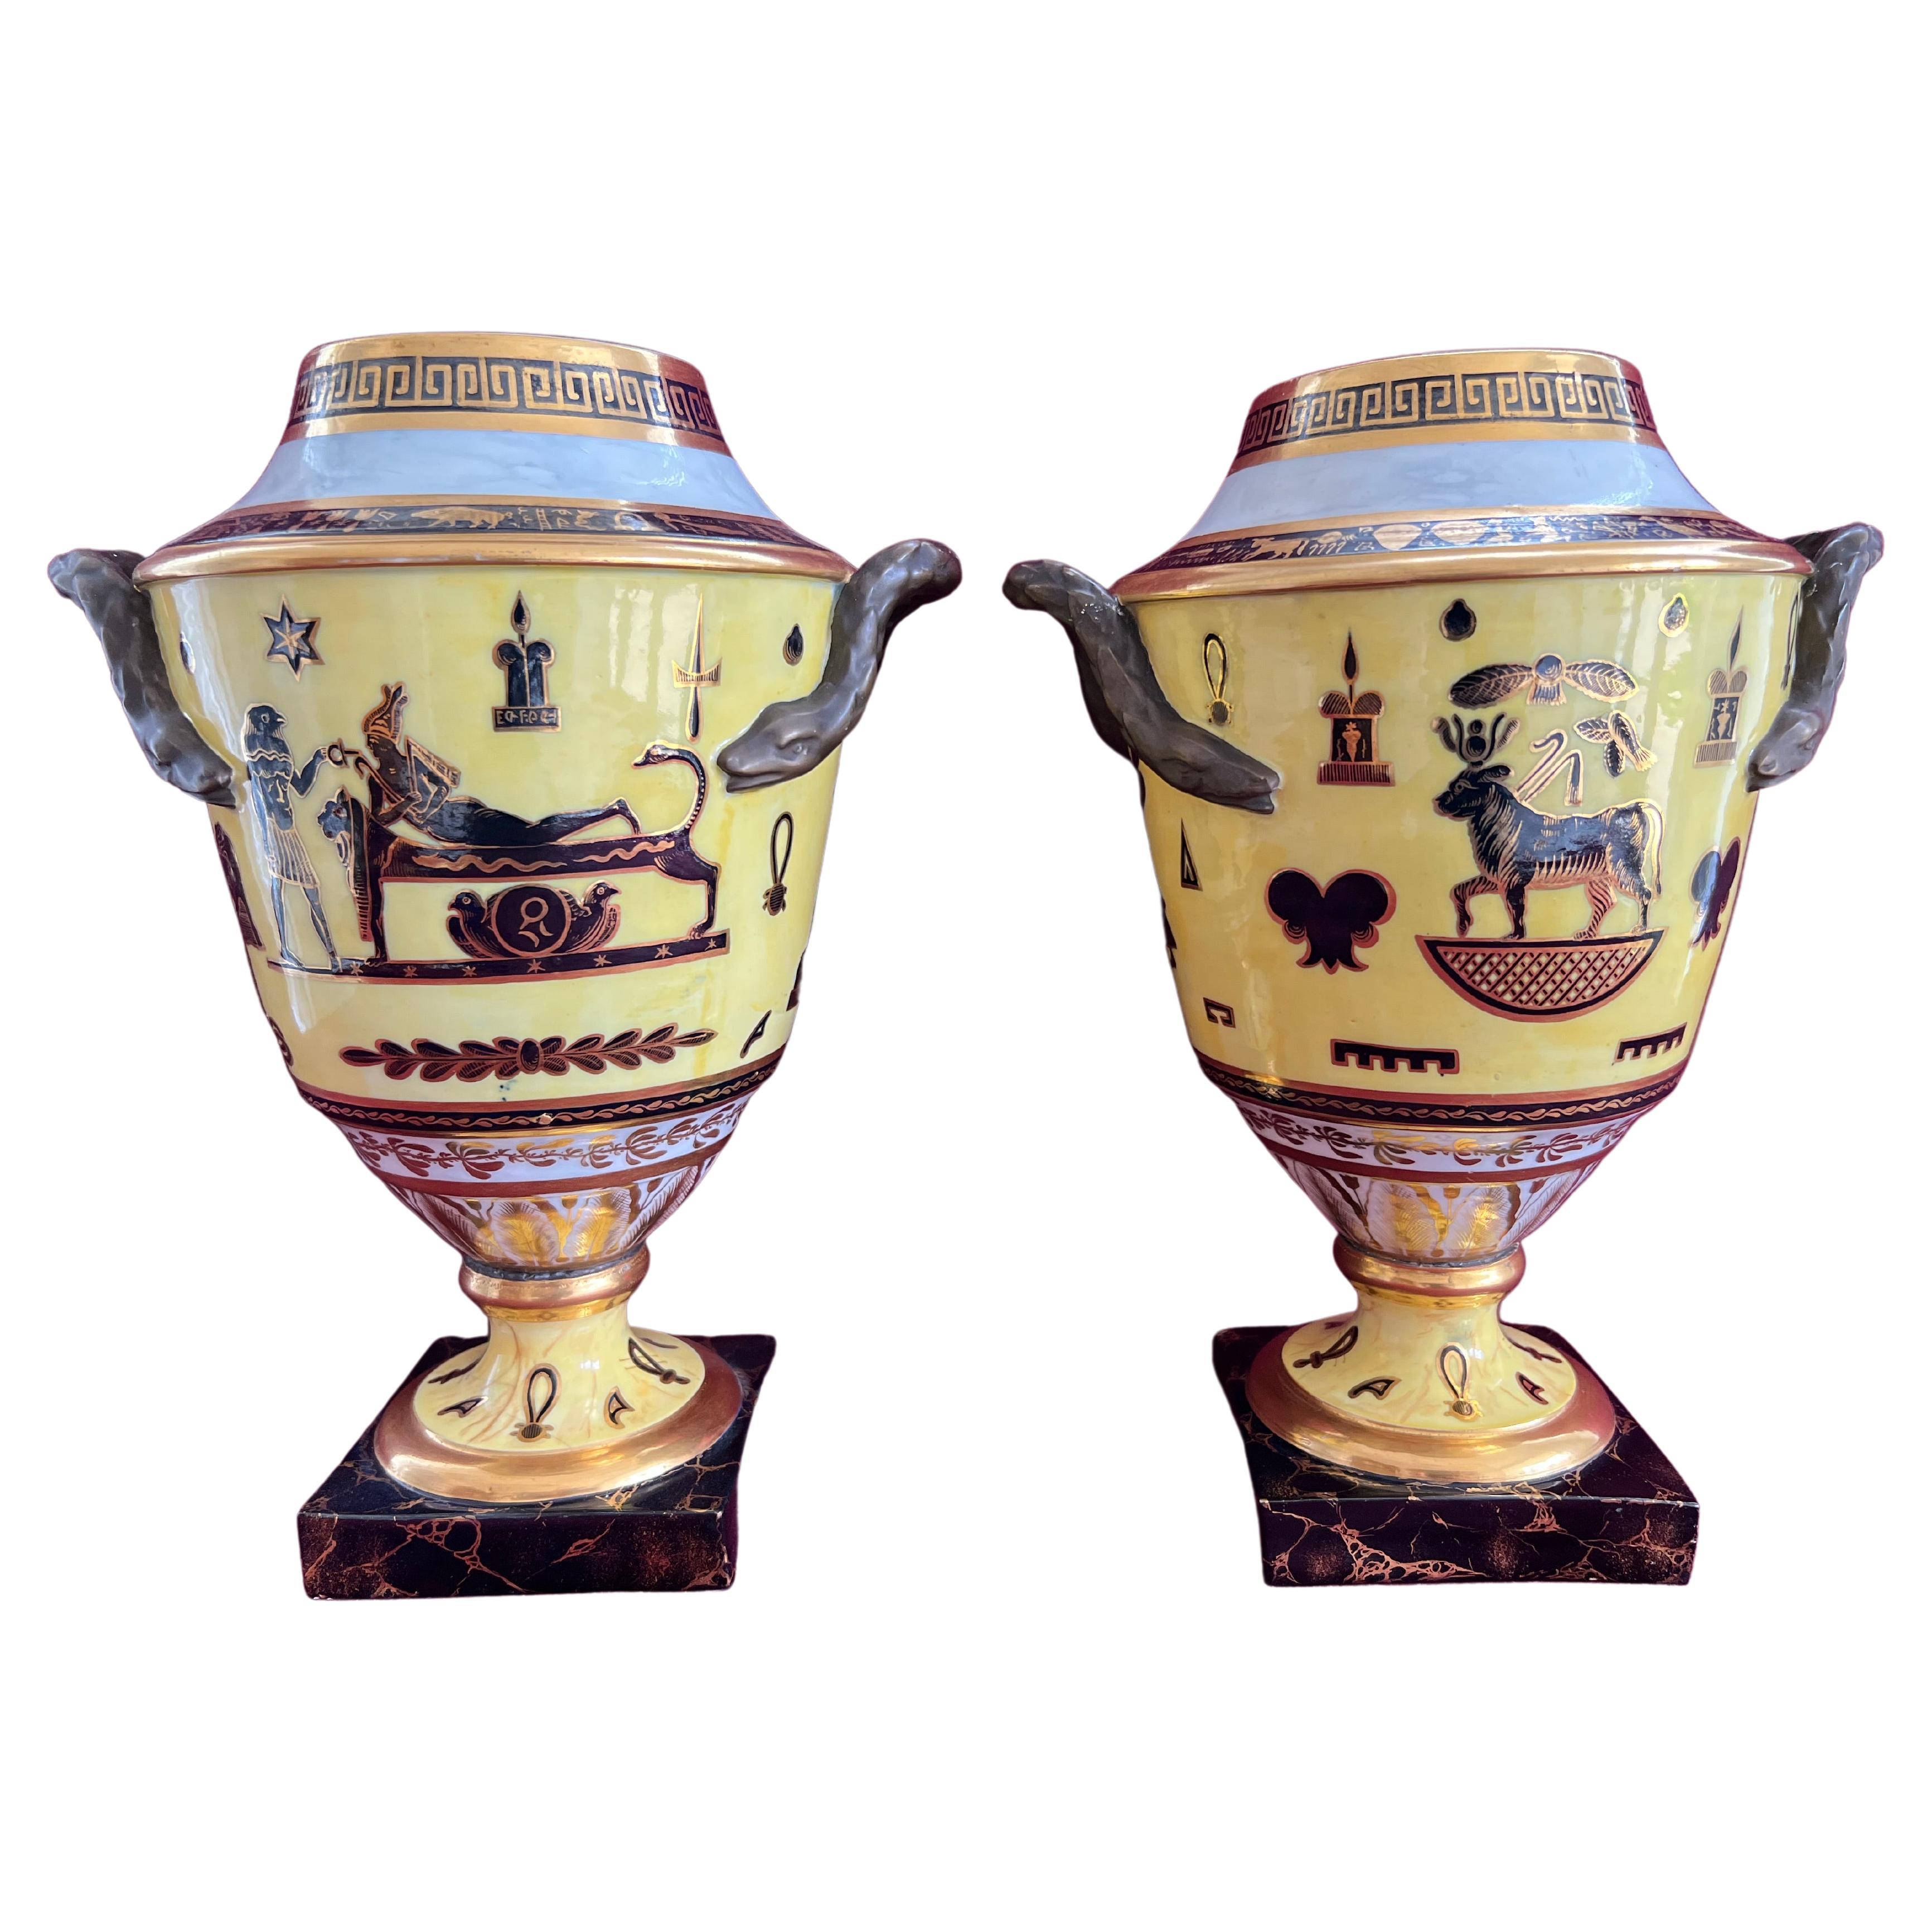 Paire de vases rares de style néo-égyptien Derby à fond jaune, vers 1805-1810